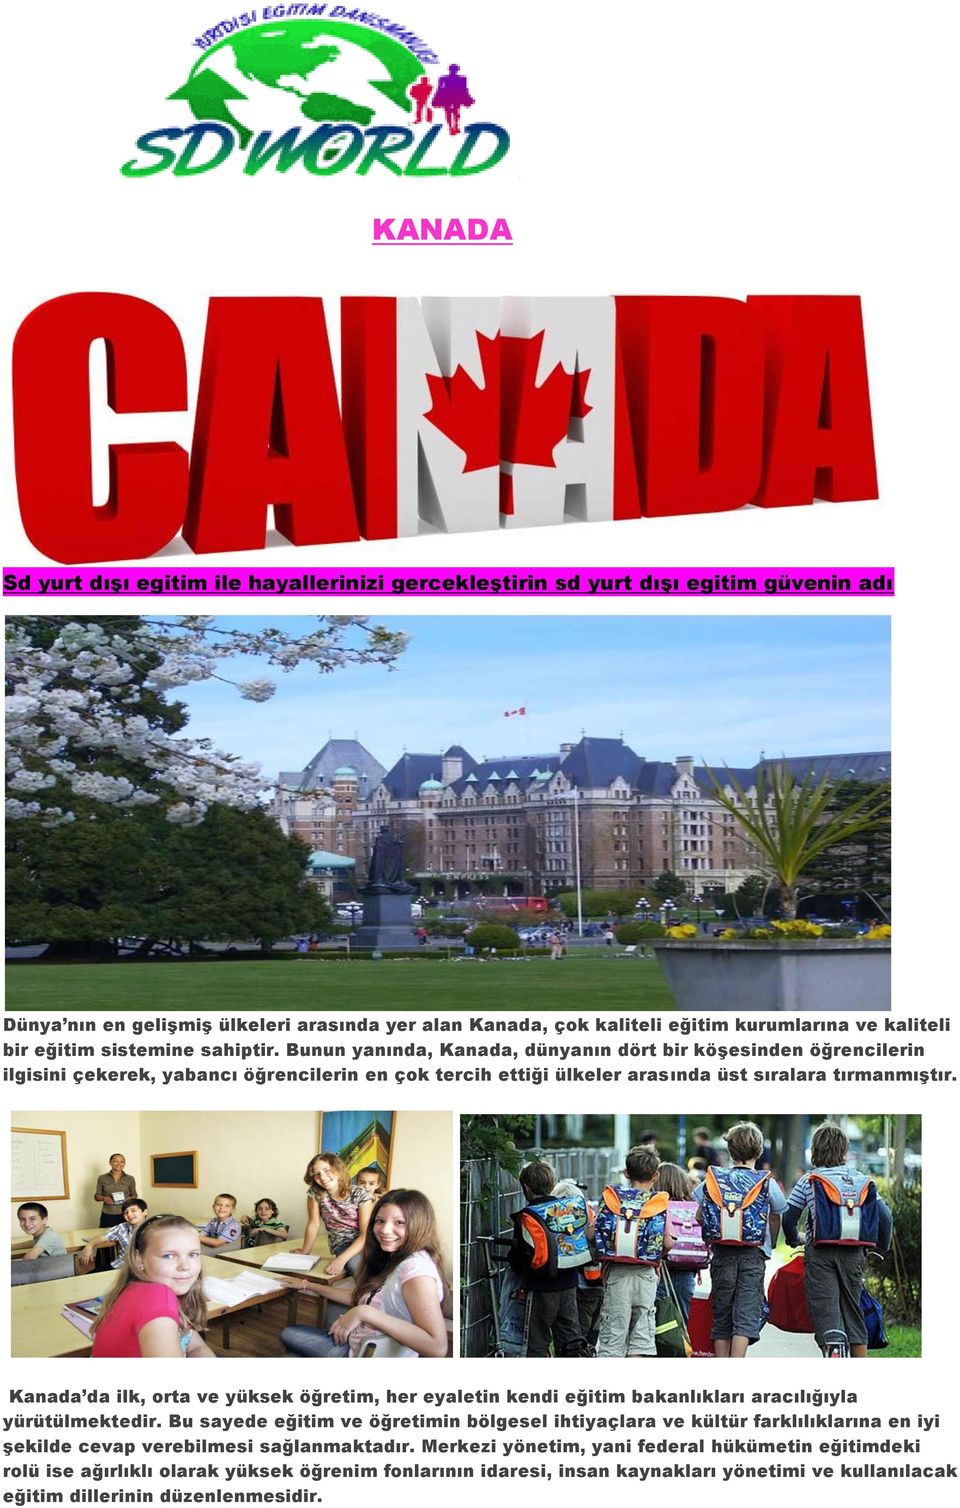 Kanada da ilk, orta ve yüksek öğretim, her eyaletin kendi eğitim bakanlıkları aracılığıyla yürütülmektedir.